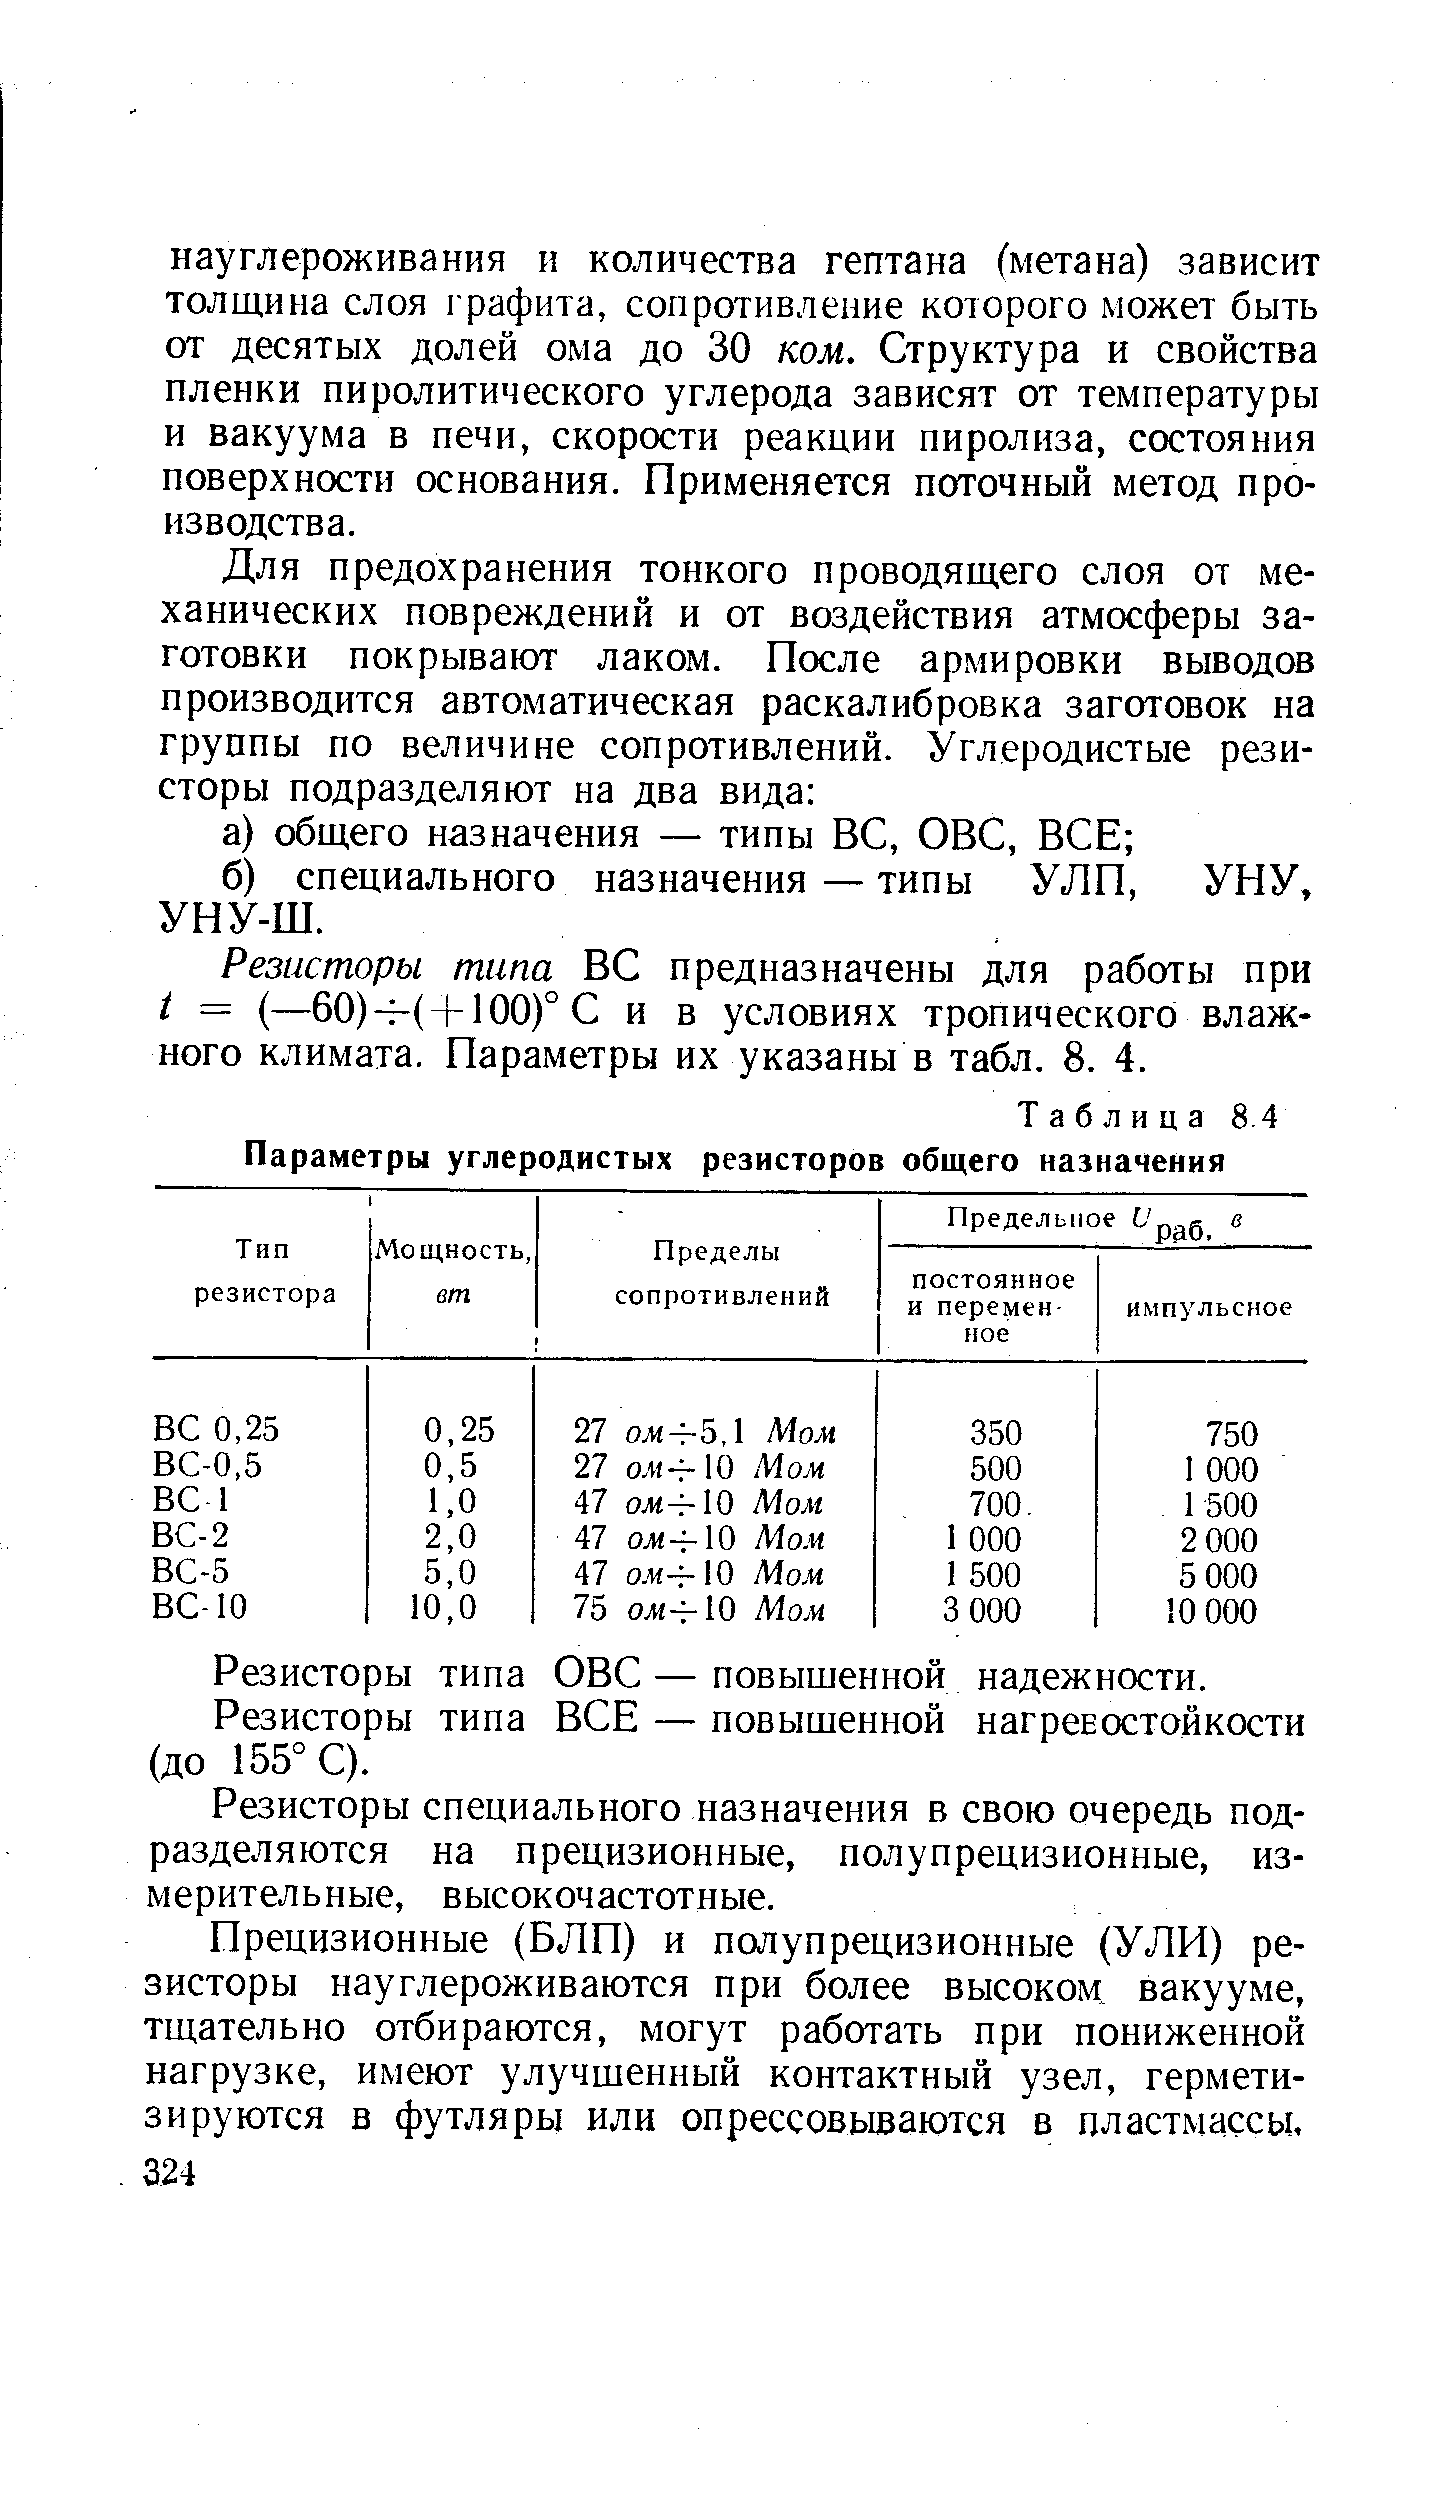 Таблица 8.4 Параметры углеродистых резисторов общего назначения
